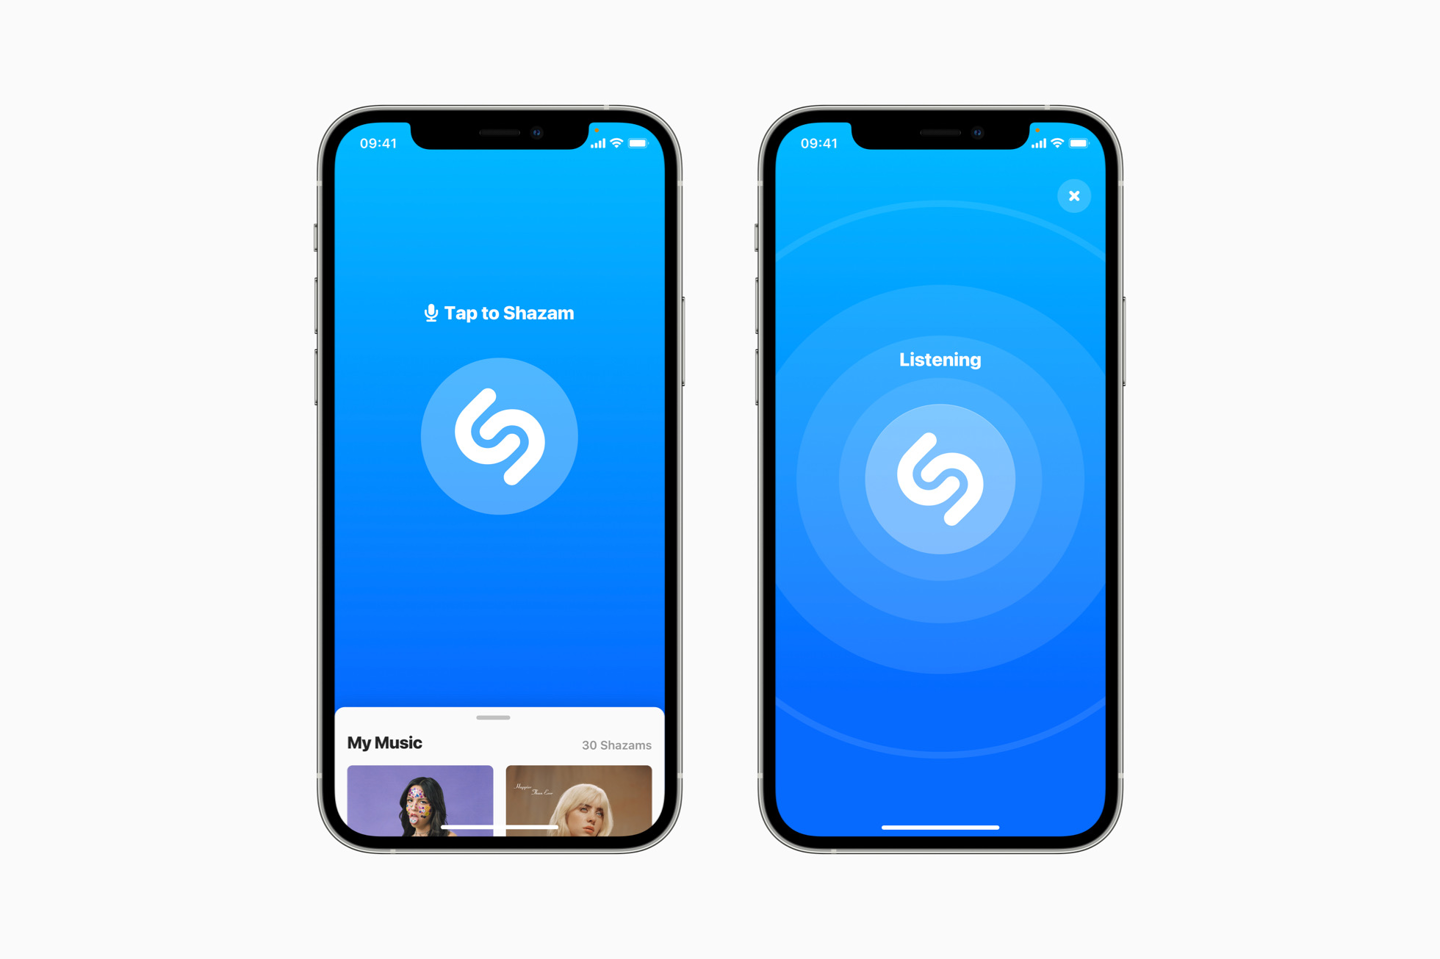 苹果搜歌神器 Shazam 可免费领最多 5 个月 Apple Music 会员